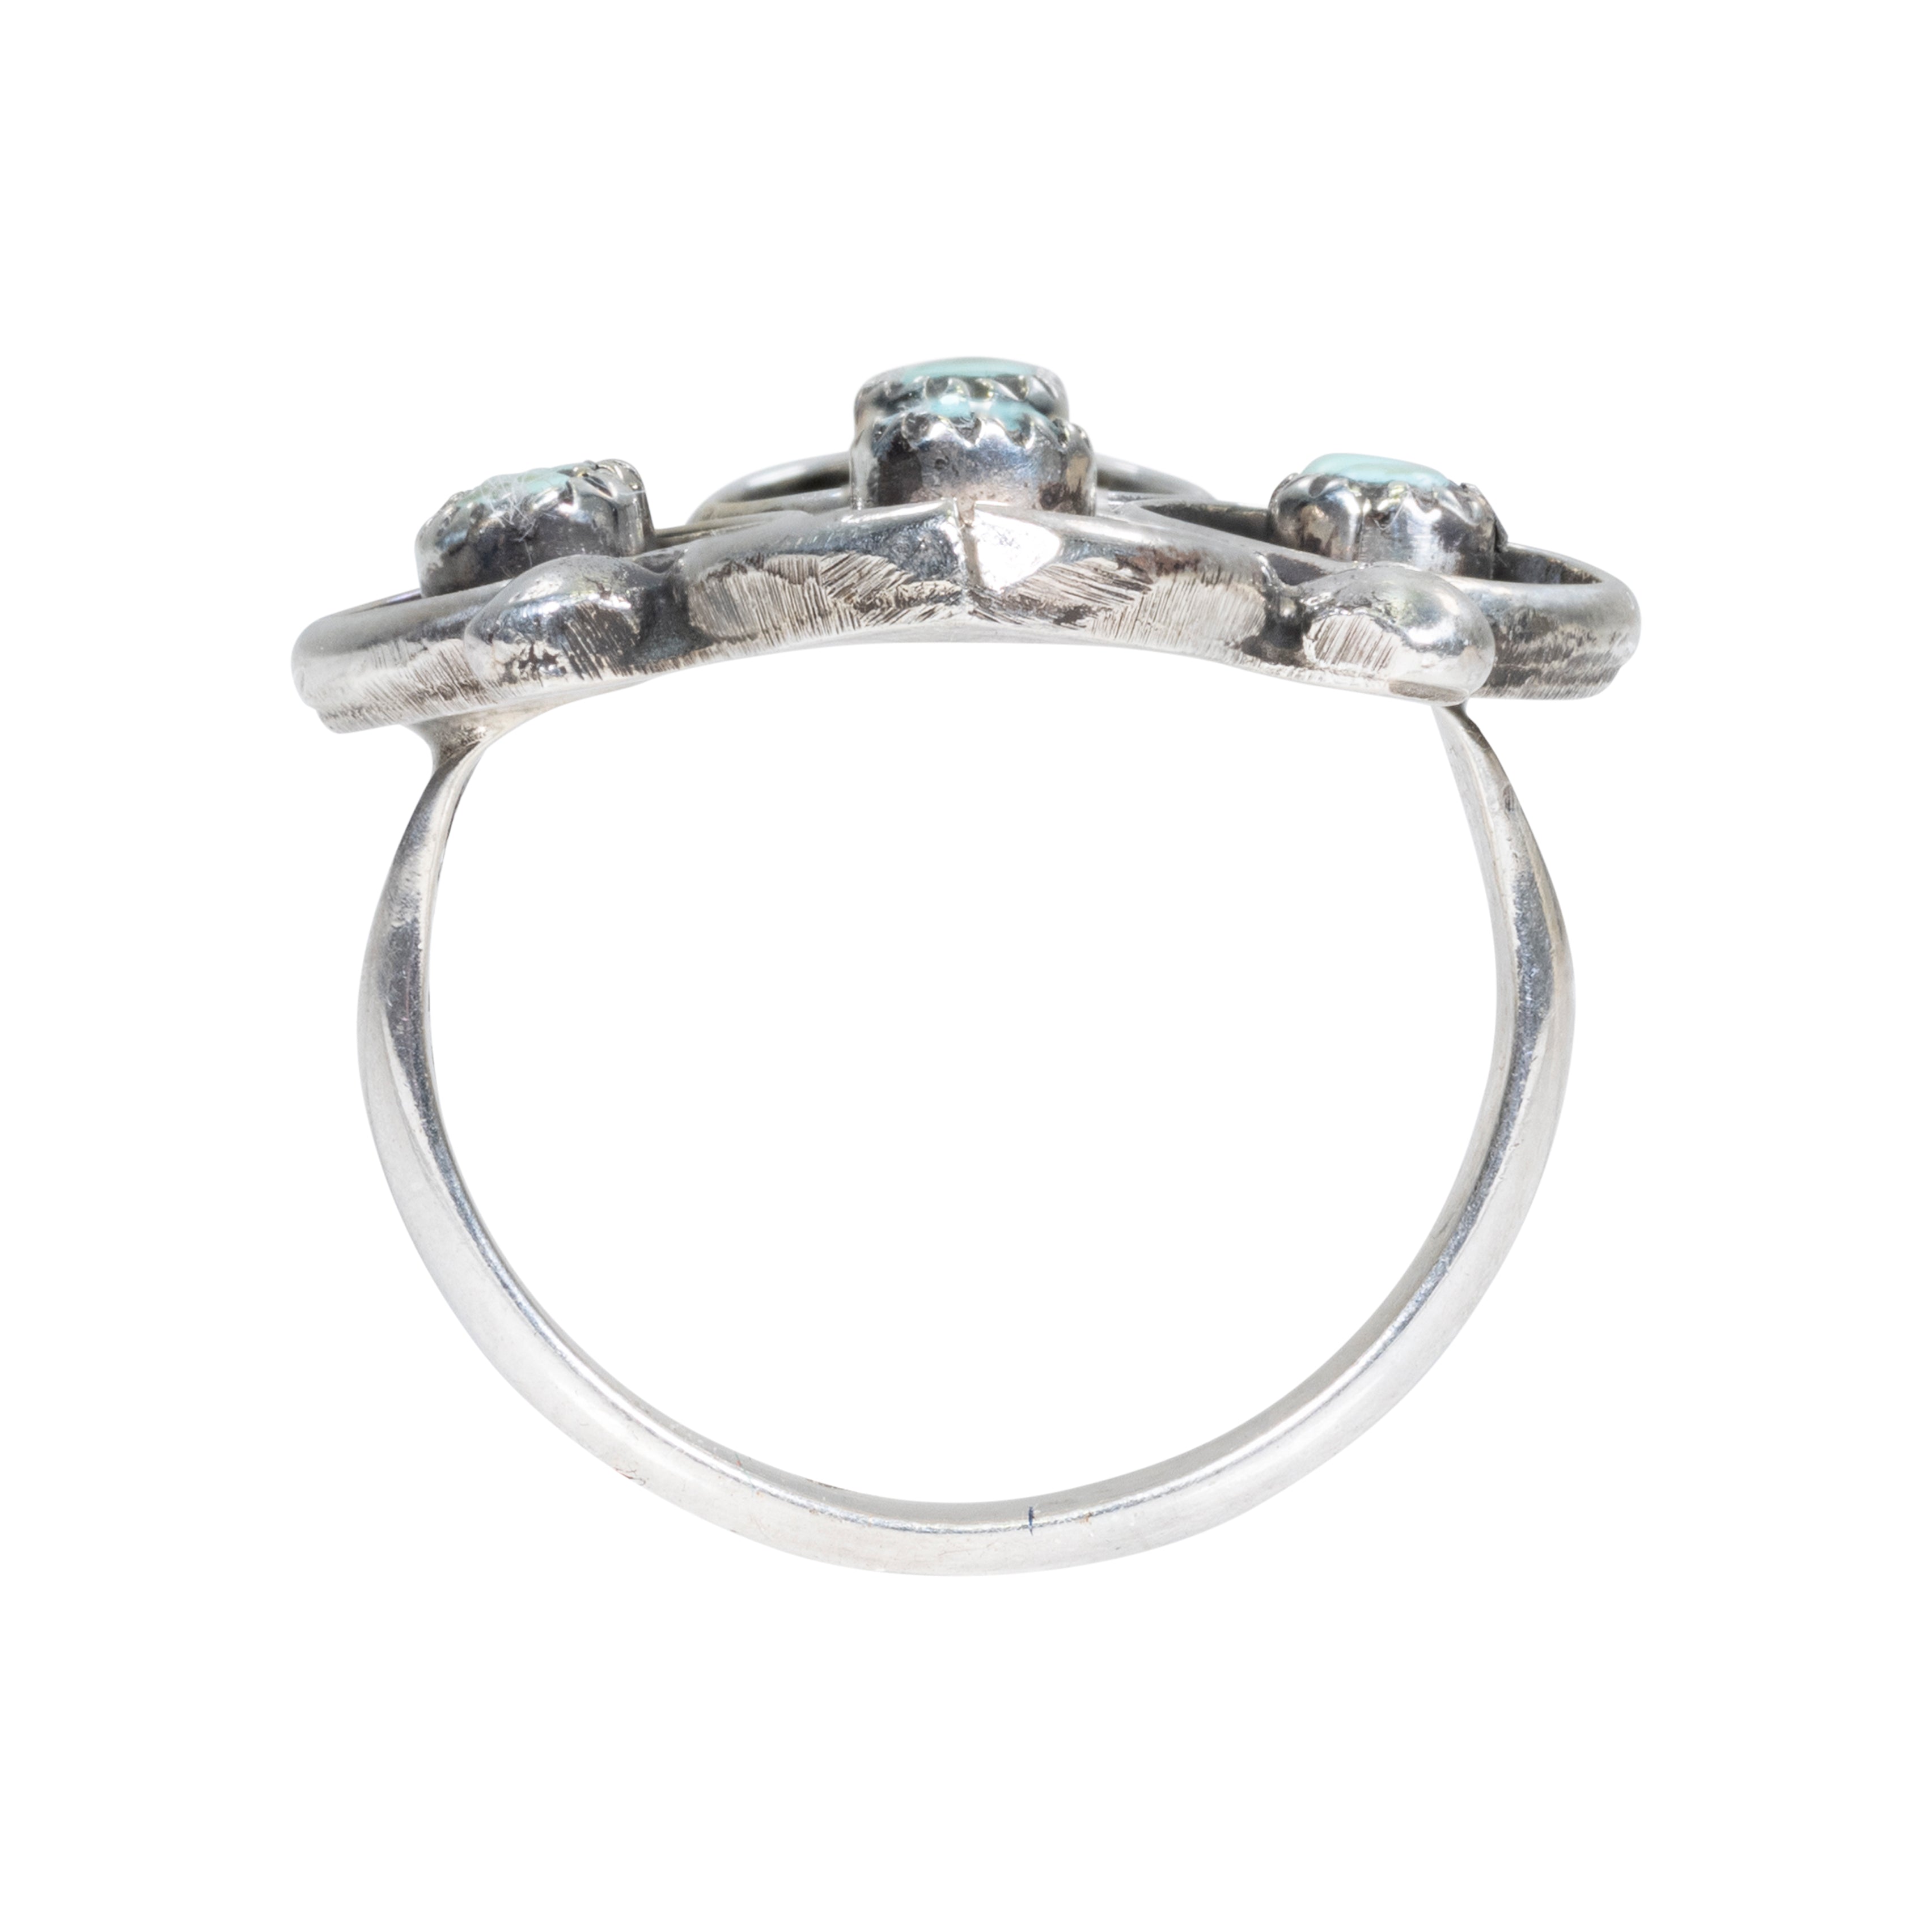 Zuni Turquoise Ring